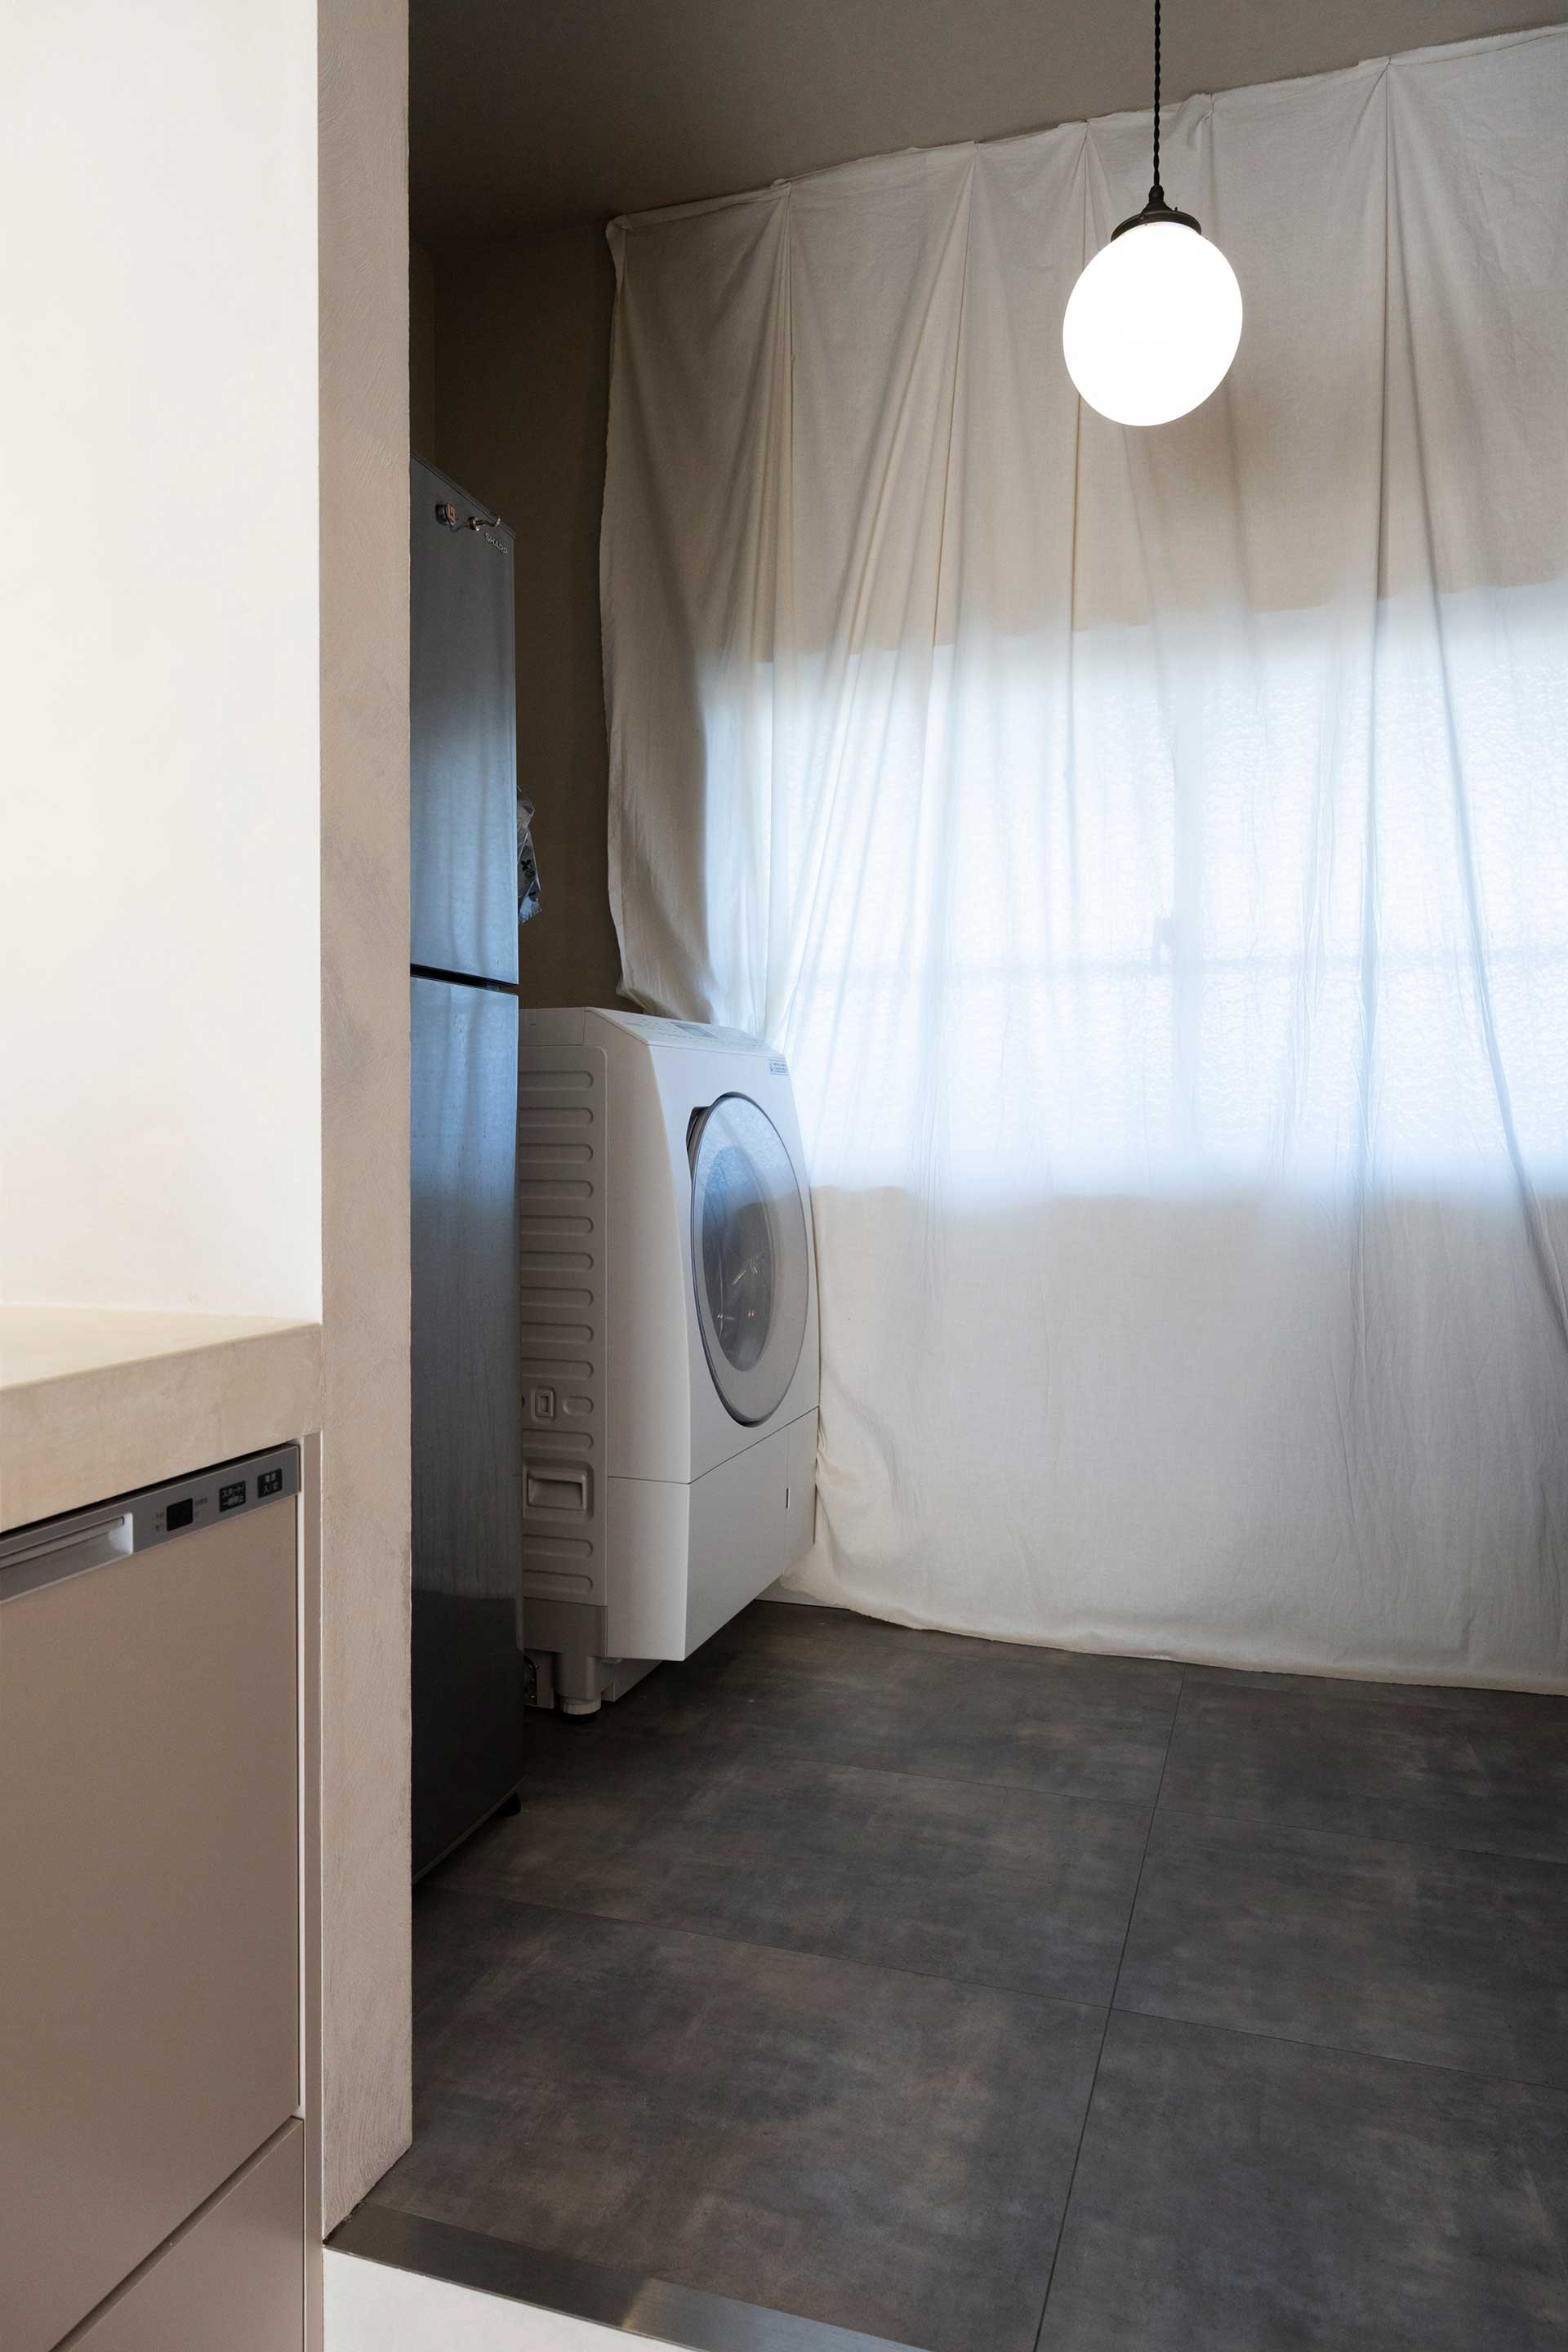 洗濯機はバスルームに置かず、パントリーに入れて生活感を排除。